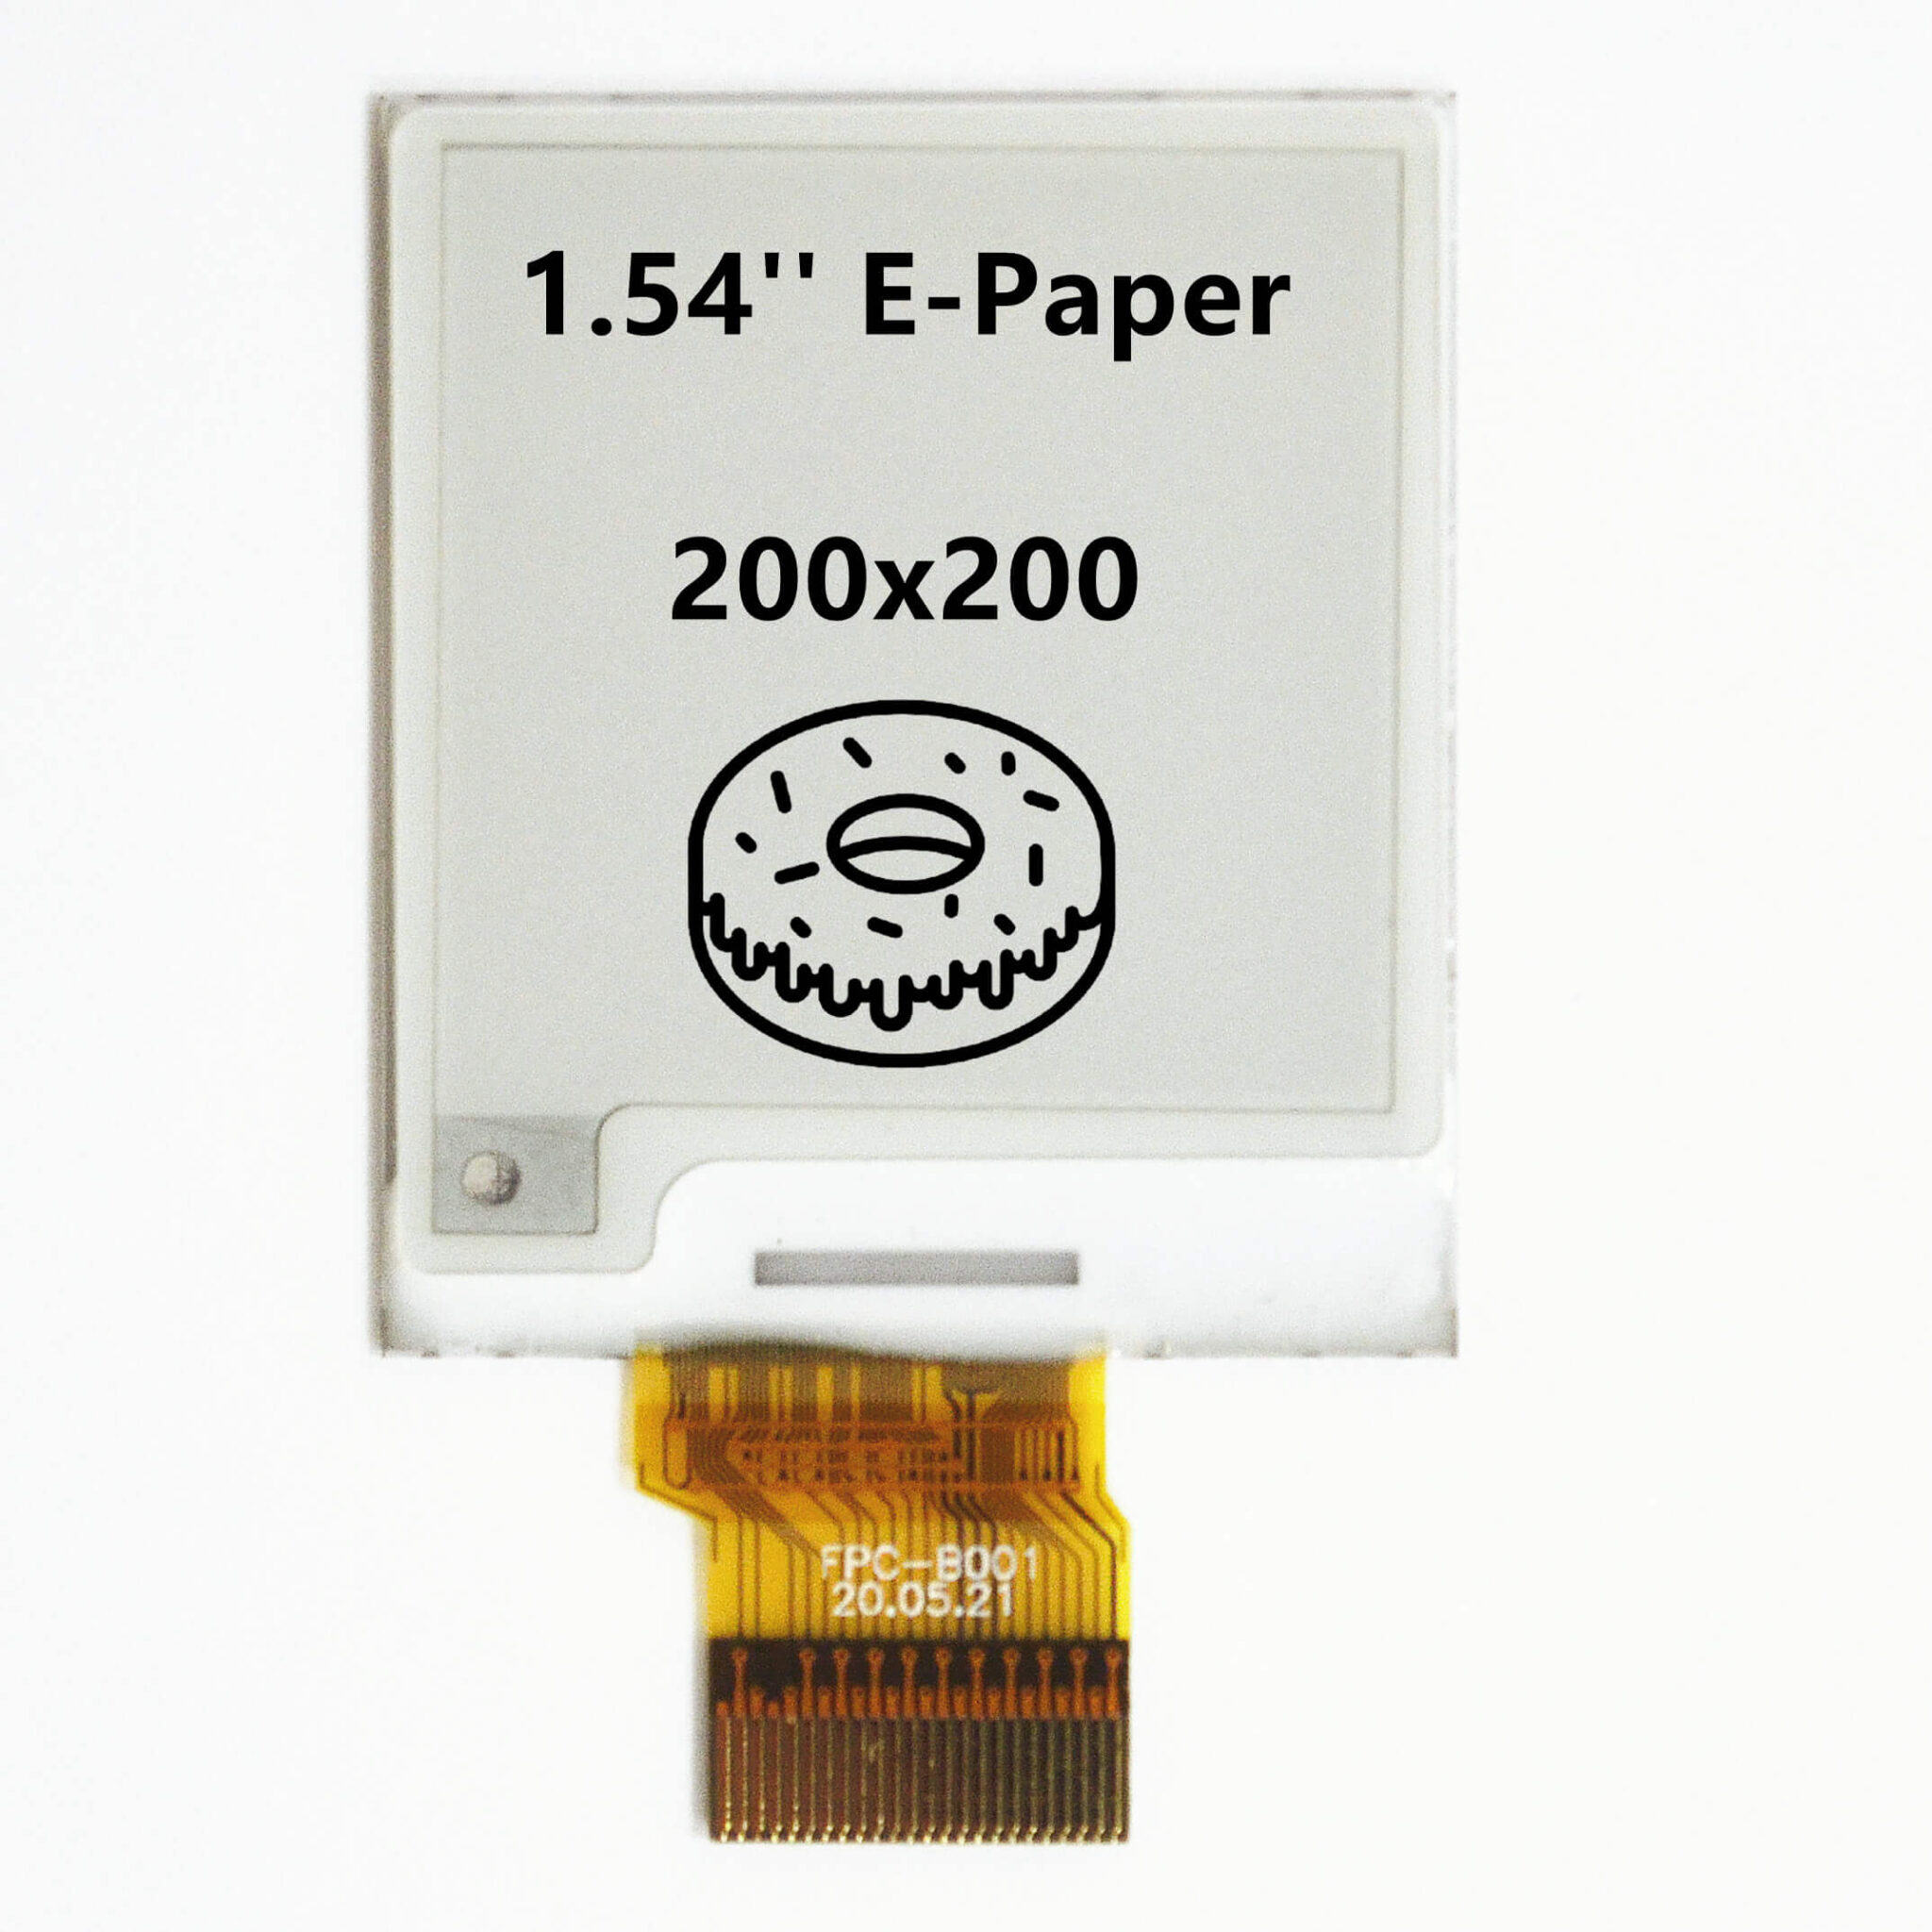 1.54 in 200x200 e-papier Trois-Couleur brut E-LNK Display Serial PERIPHERAL INTERFACE Interface aucune Carte De Circuit Imprimé environ 3.91 cm 